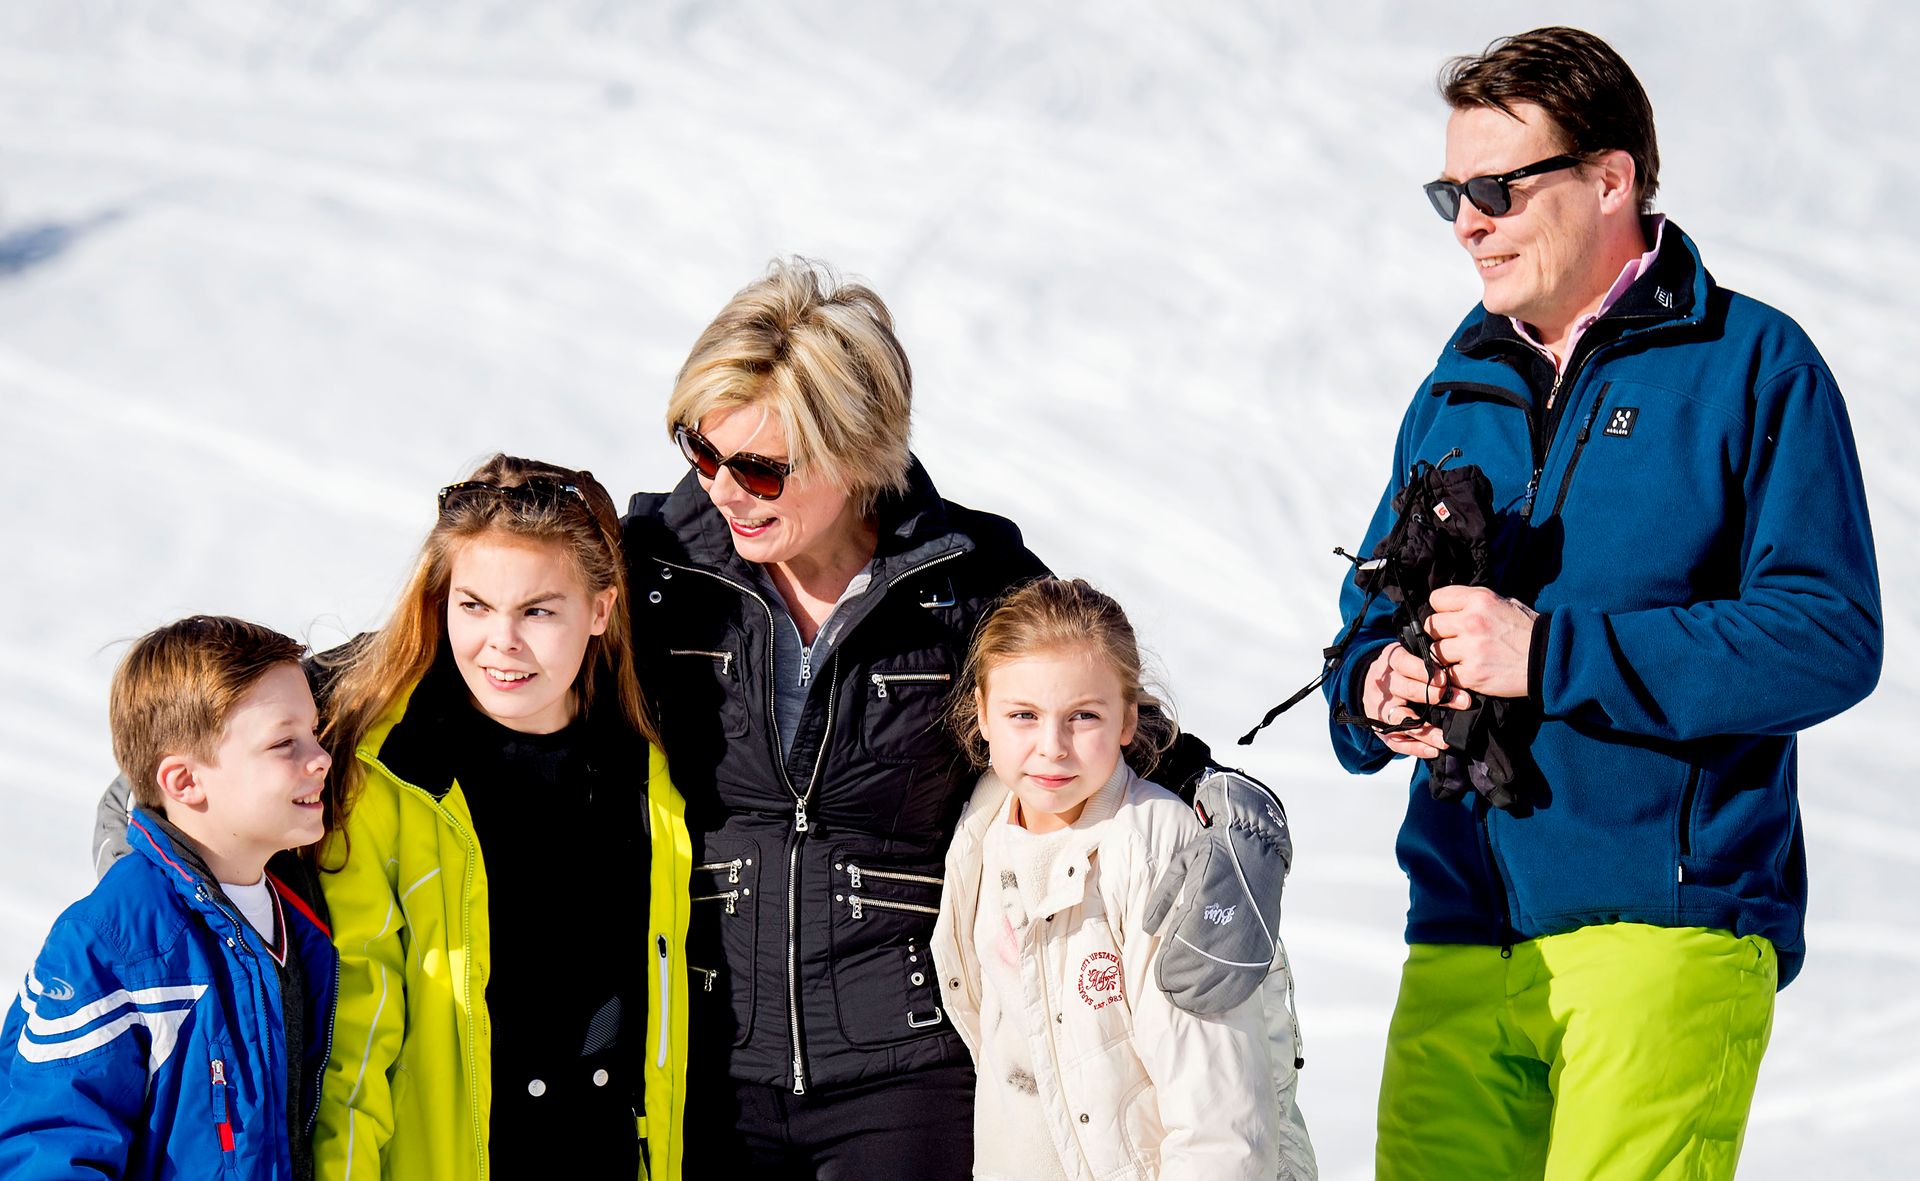 Op wintersportvakantie met de familie in Oostenrijk, 2016.